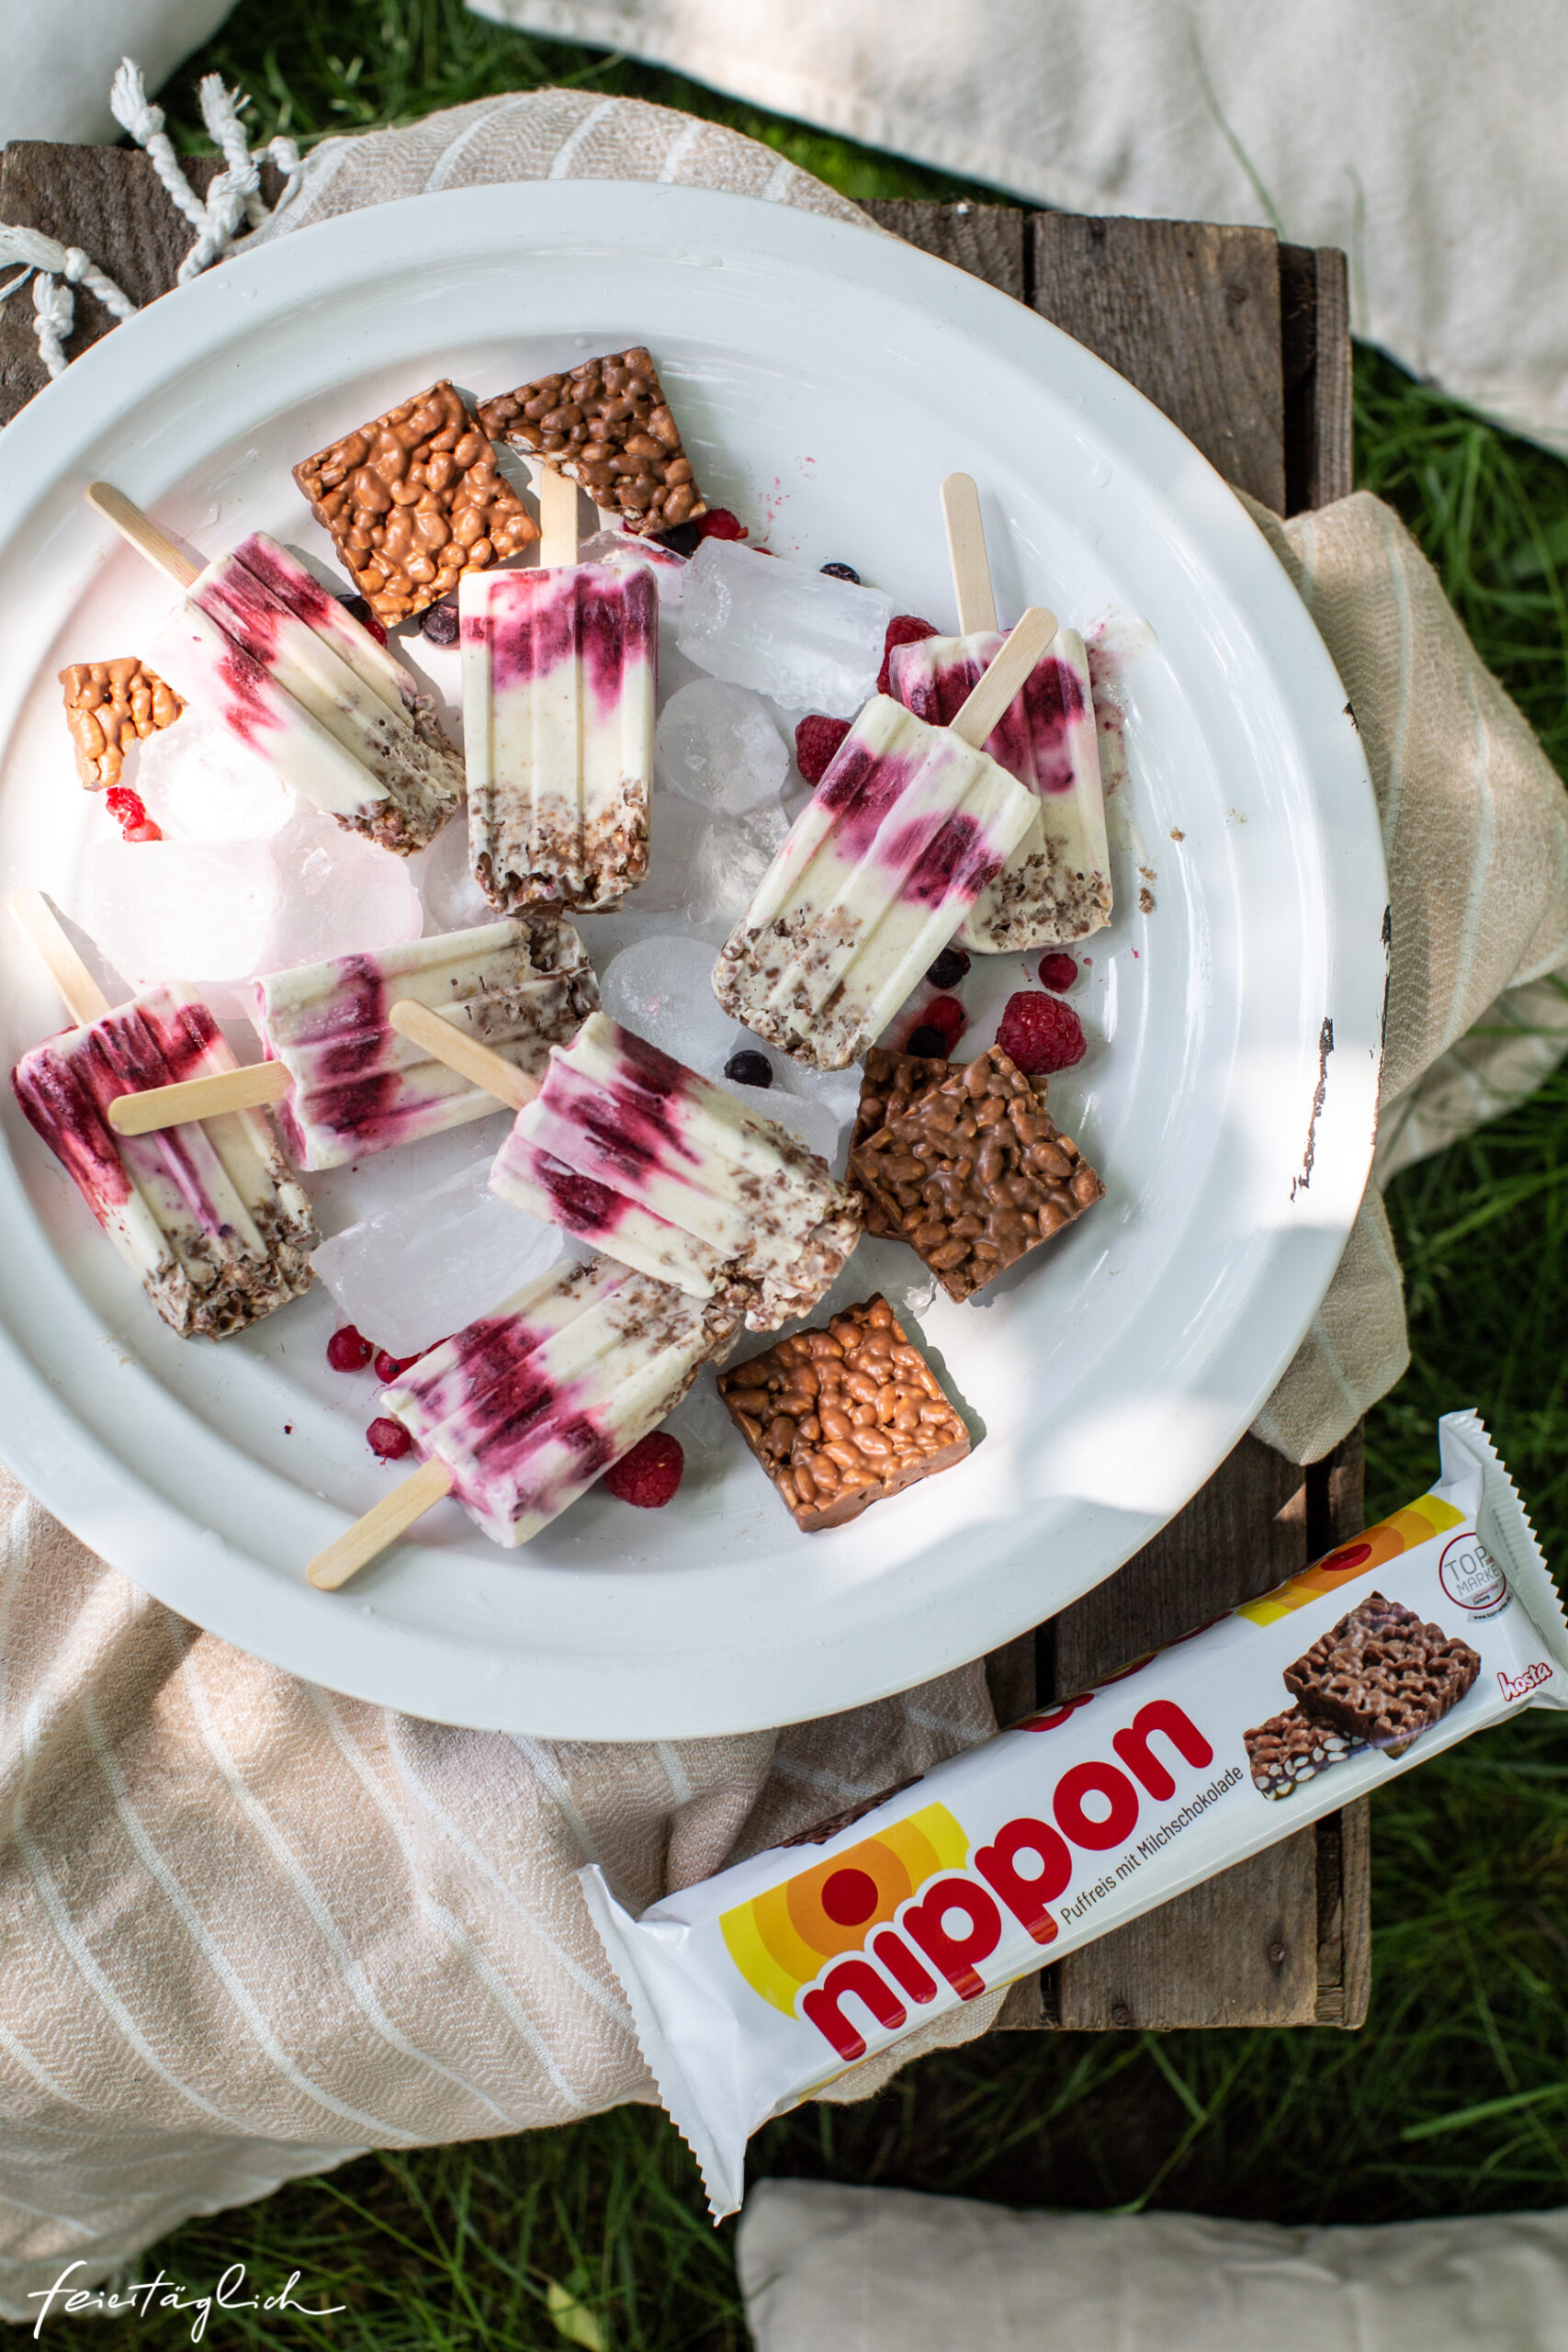 Ein Sommerpicknick mit Eis am Stiel: Rezept für Nippon-Vanille-Beerenswirl-Popsicles